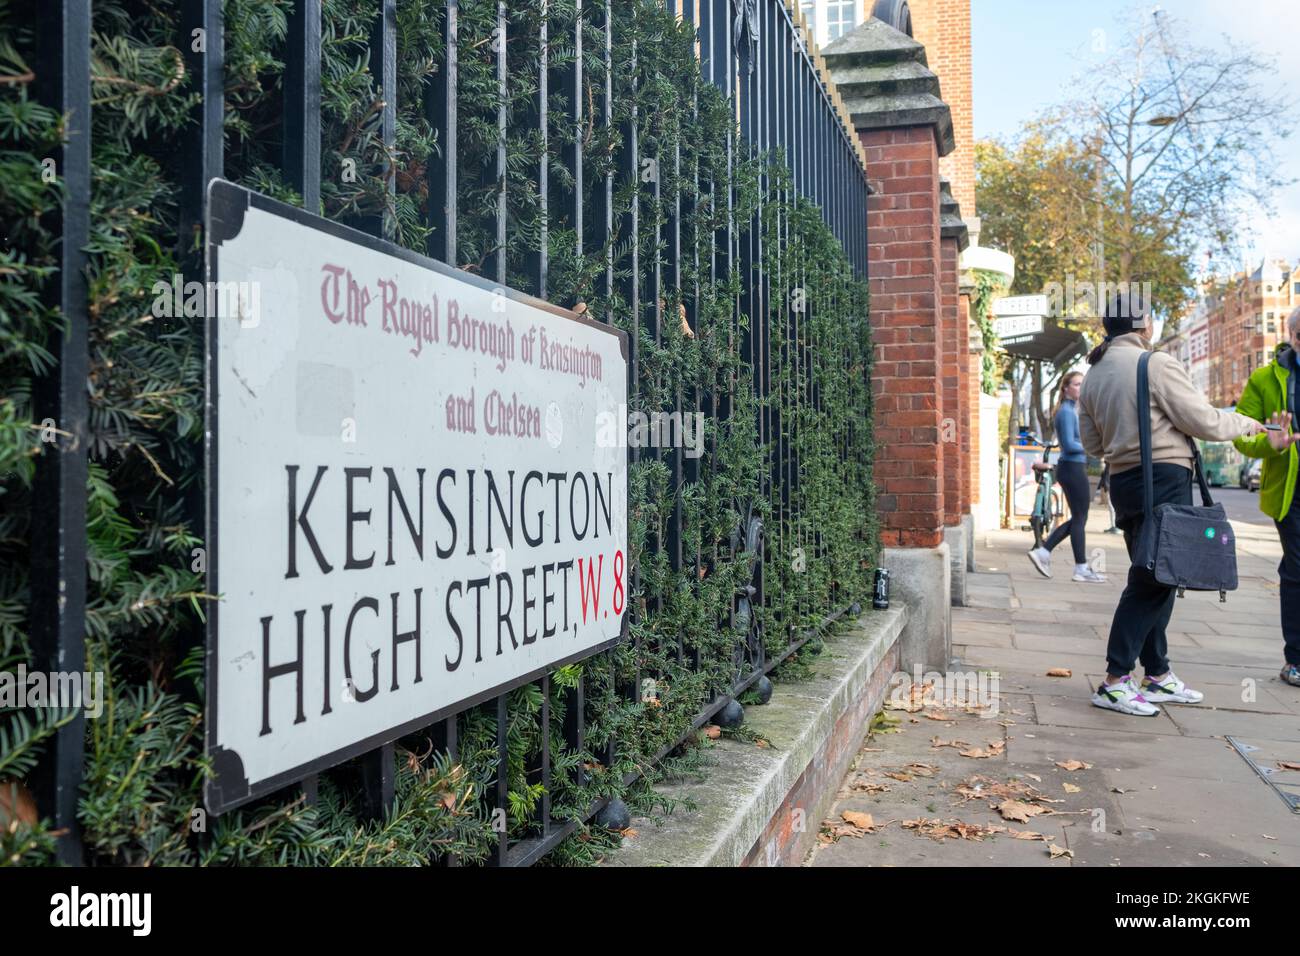 Londres- 2022 de noviembre: Kensington High Street W8 señal, una calle de tiendas y restaurantes de alta categoría. Foto de stock